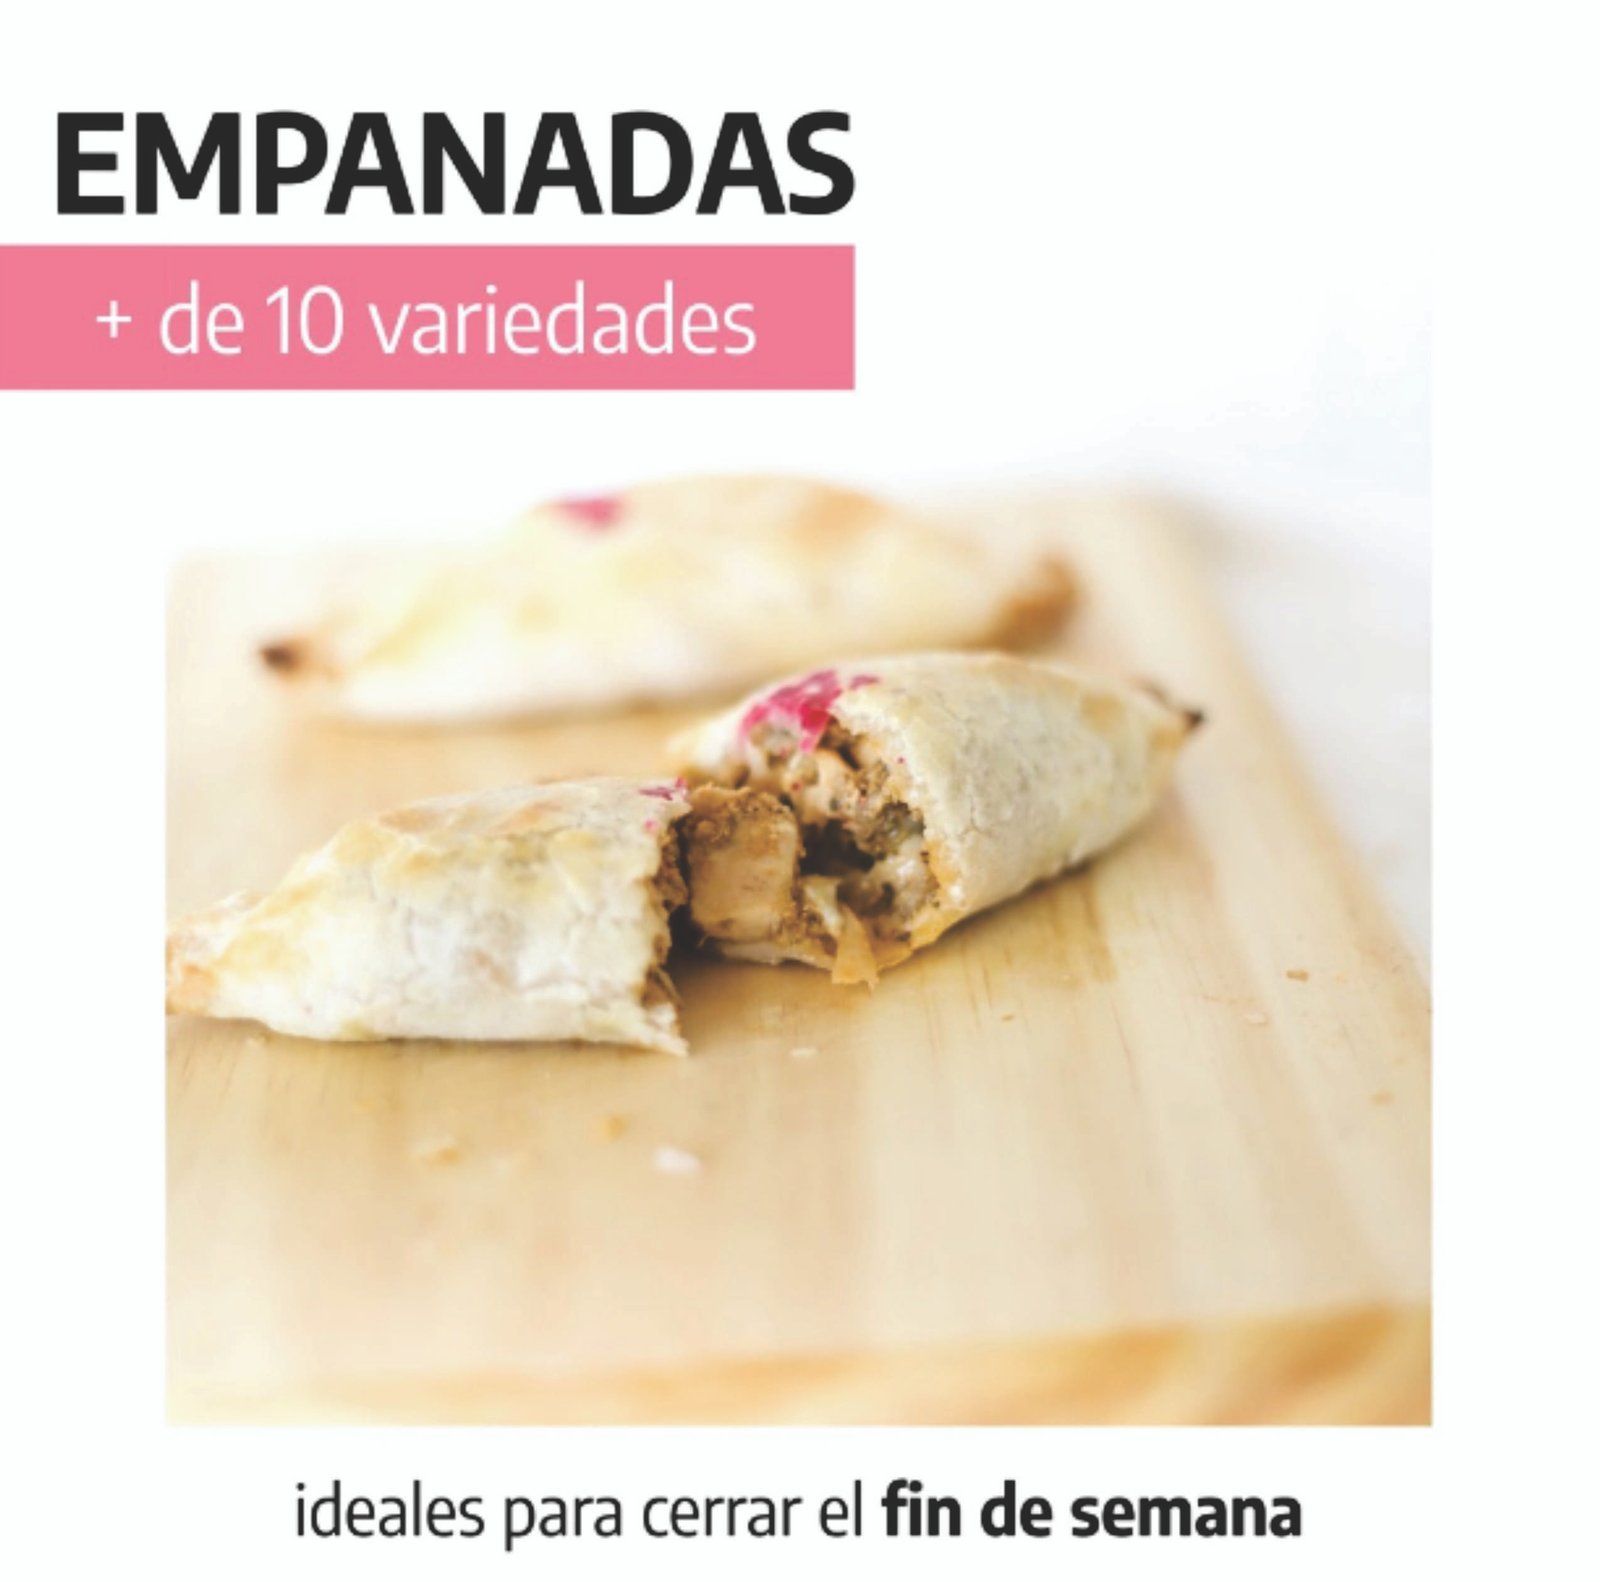 Empanadas, + de 10 variedades